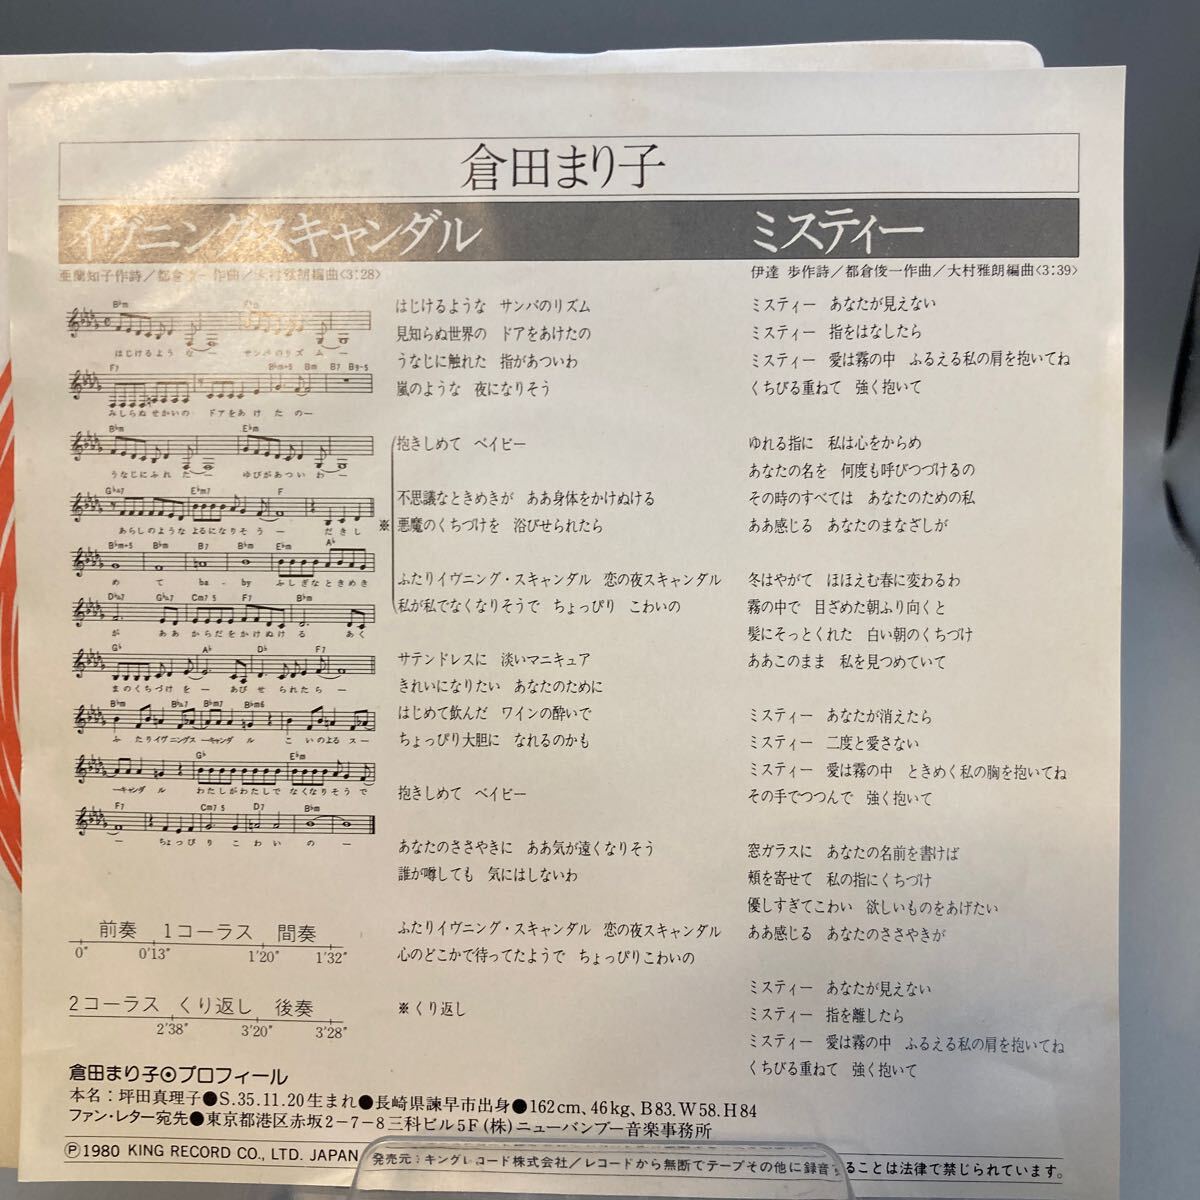 再生良好 美盤 EP/倉田まり子「イヴニング・スキャンダル/ミスティー(1980年:GK-380)」_画像2